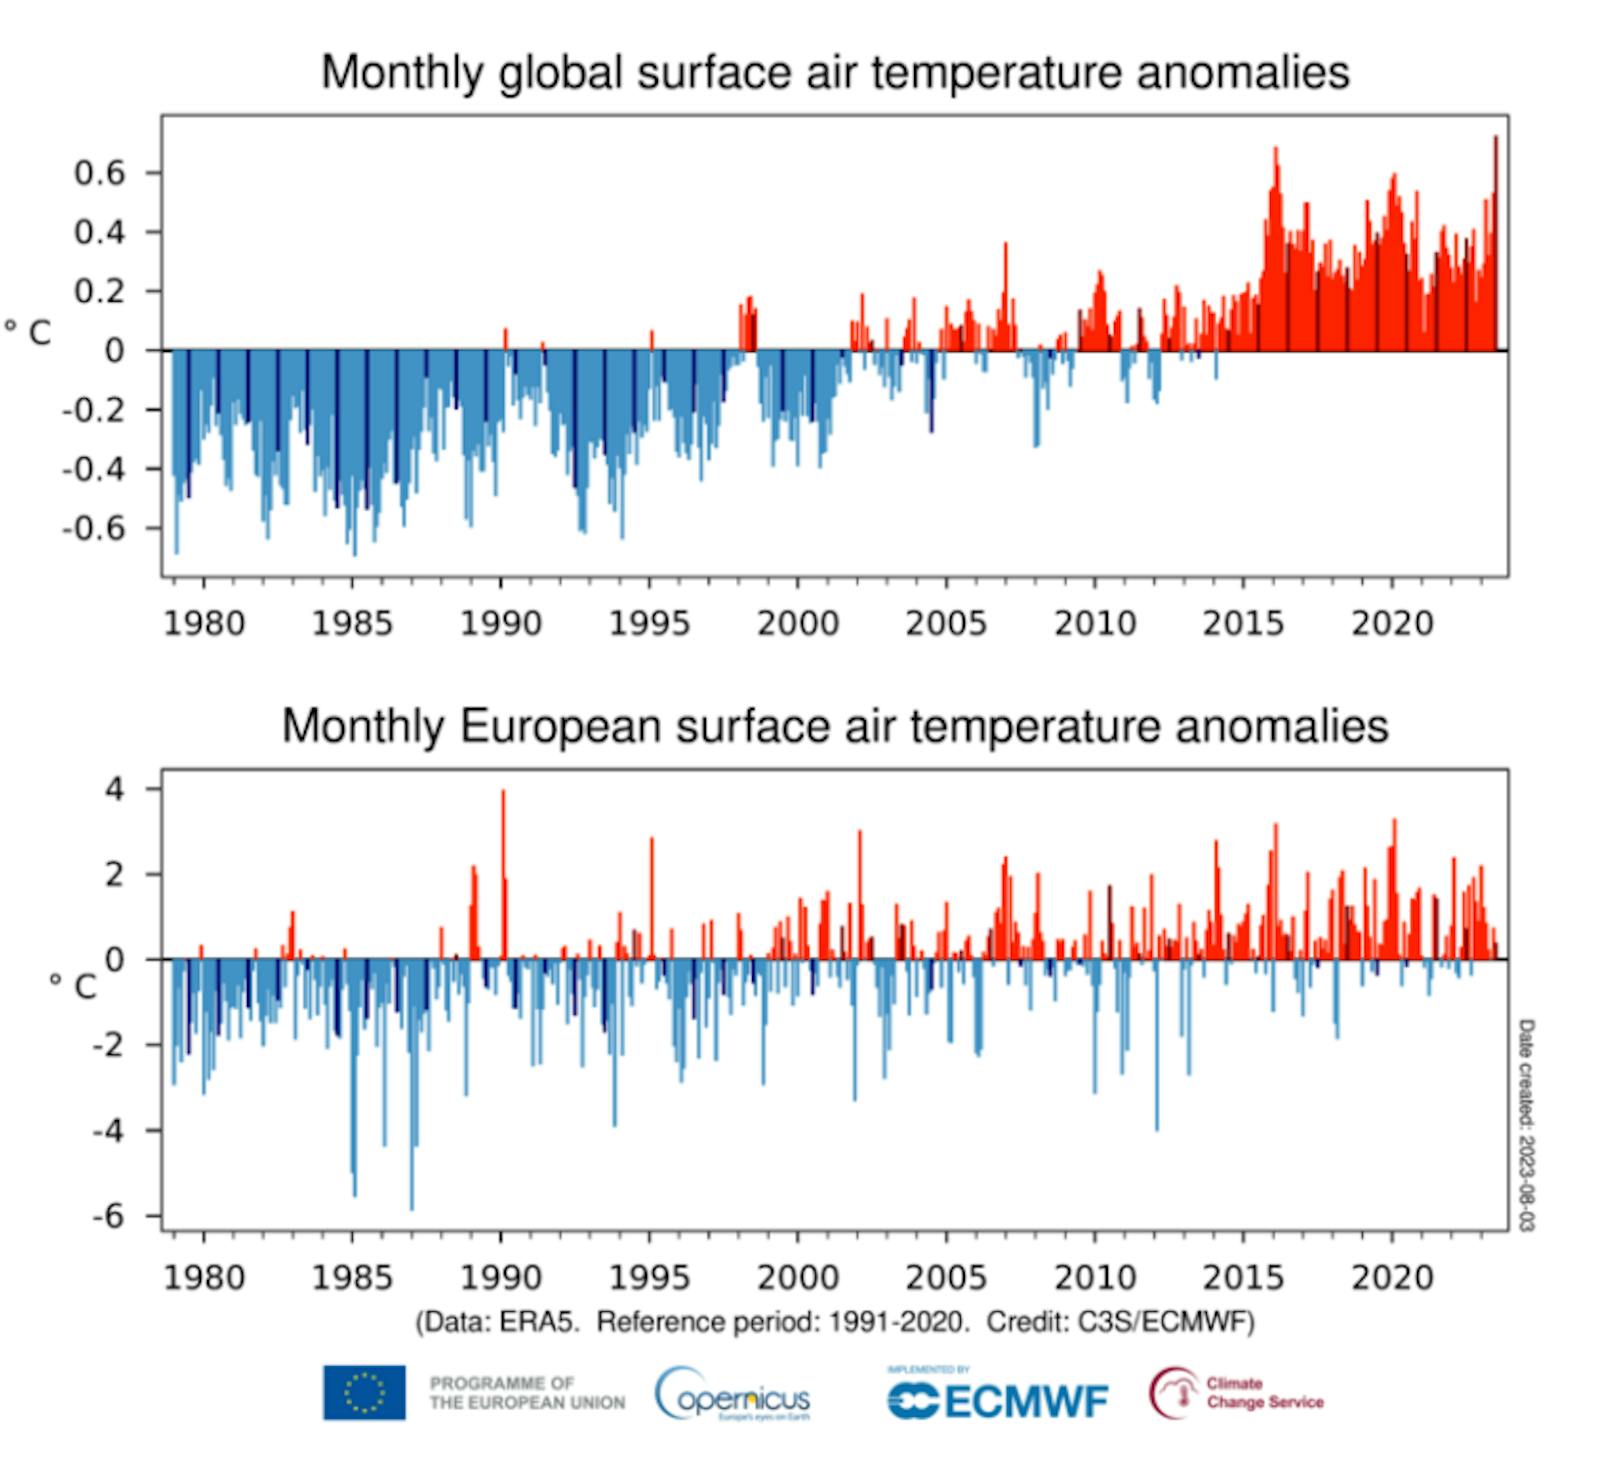 Monatliche Anomalien der Oberflächen Luft-Temperatur weltweit (oben) und in Europa (unten).